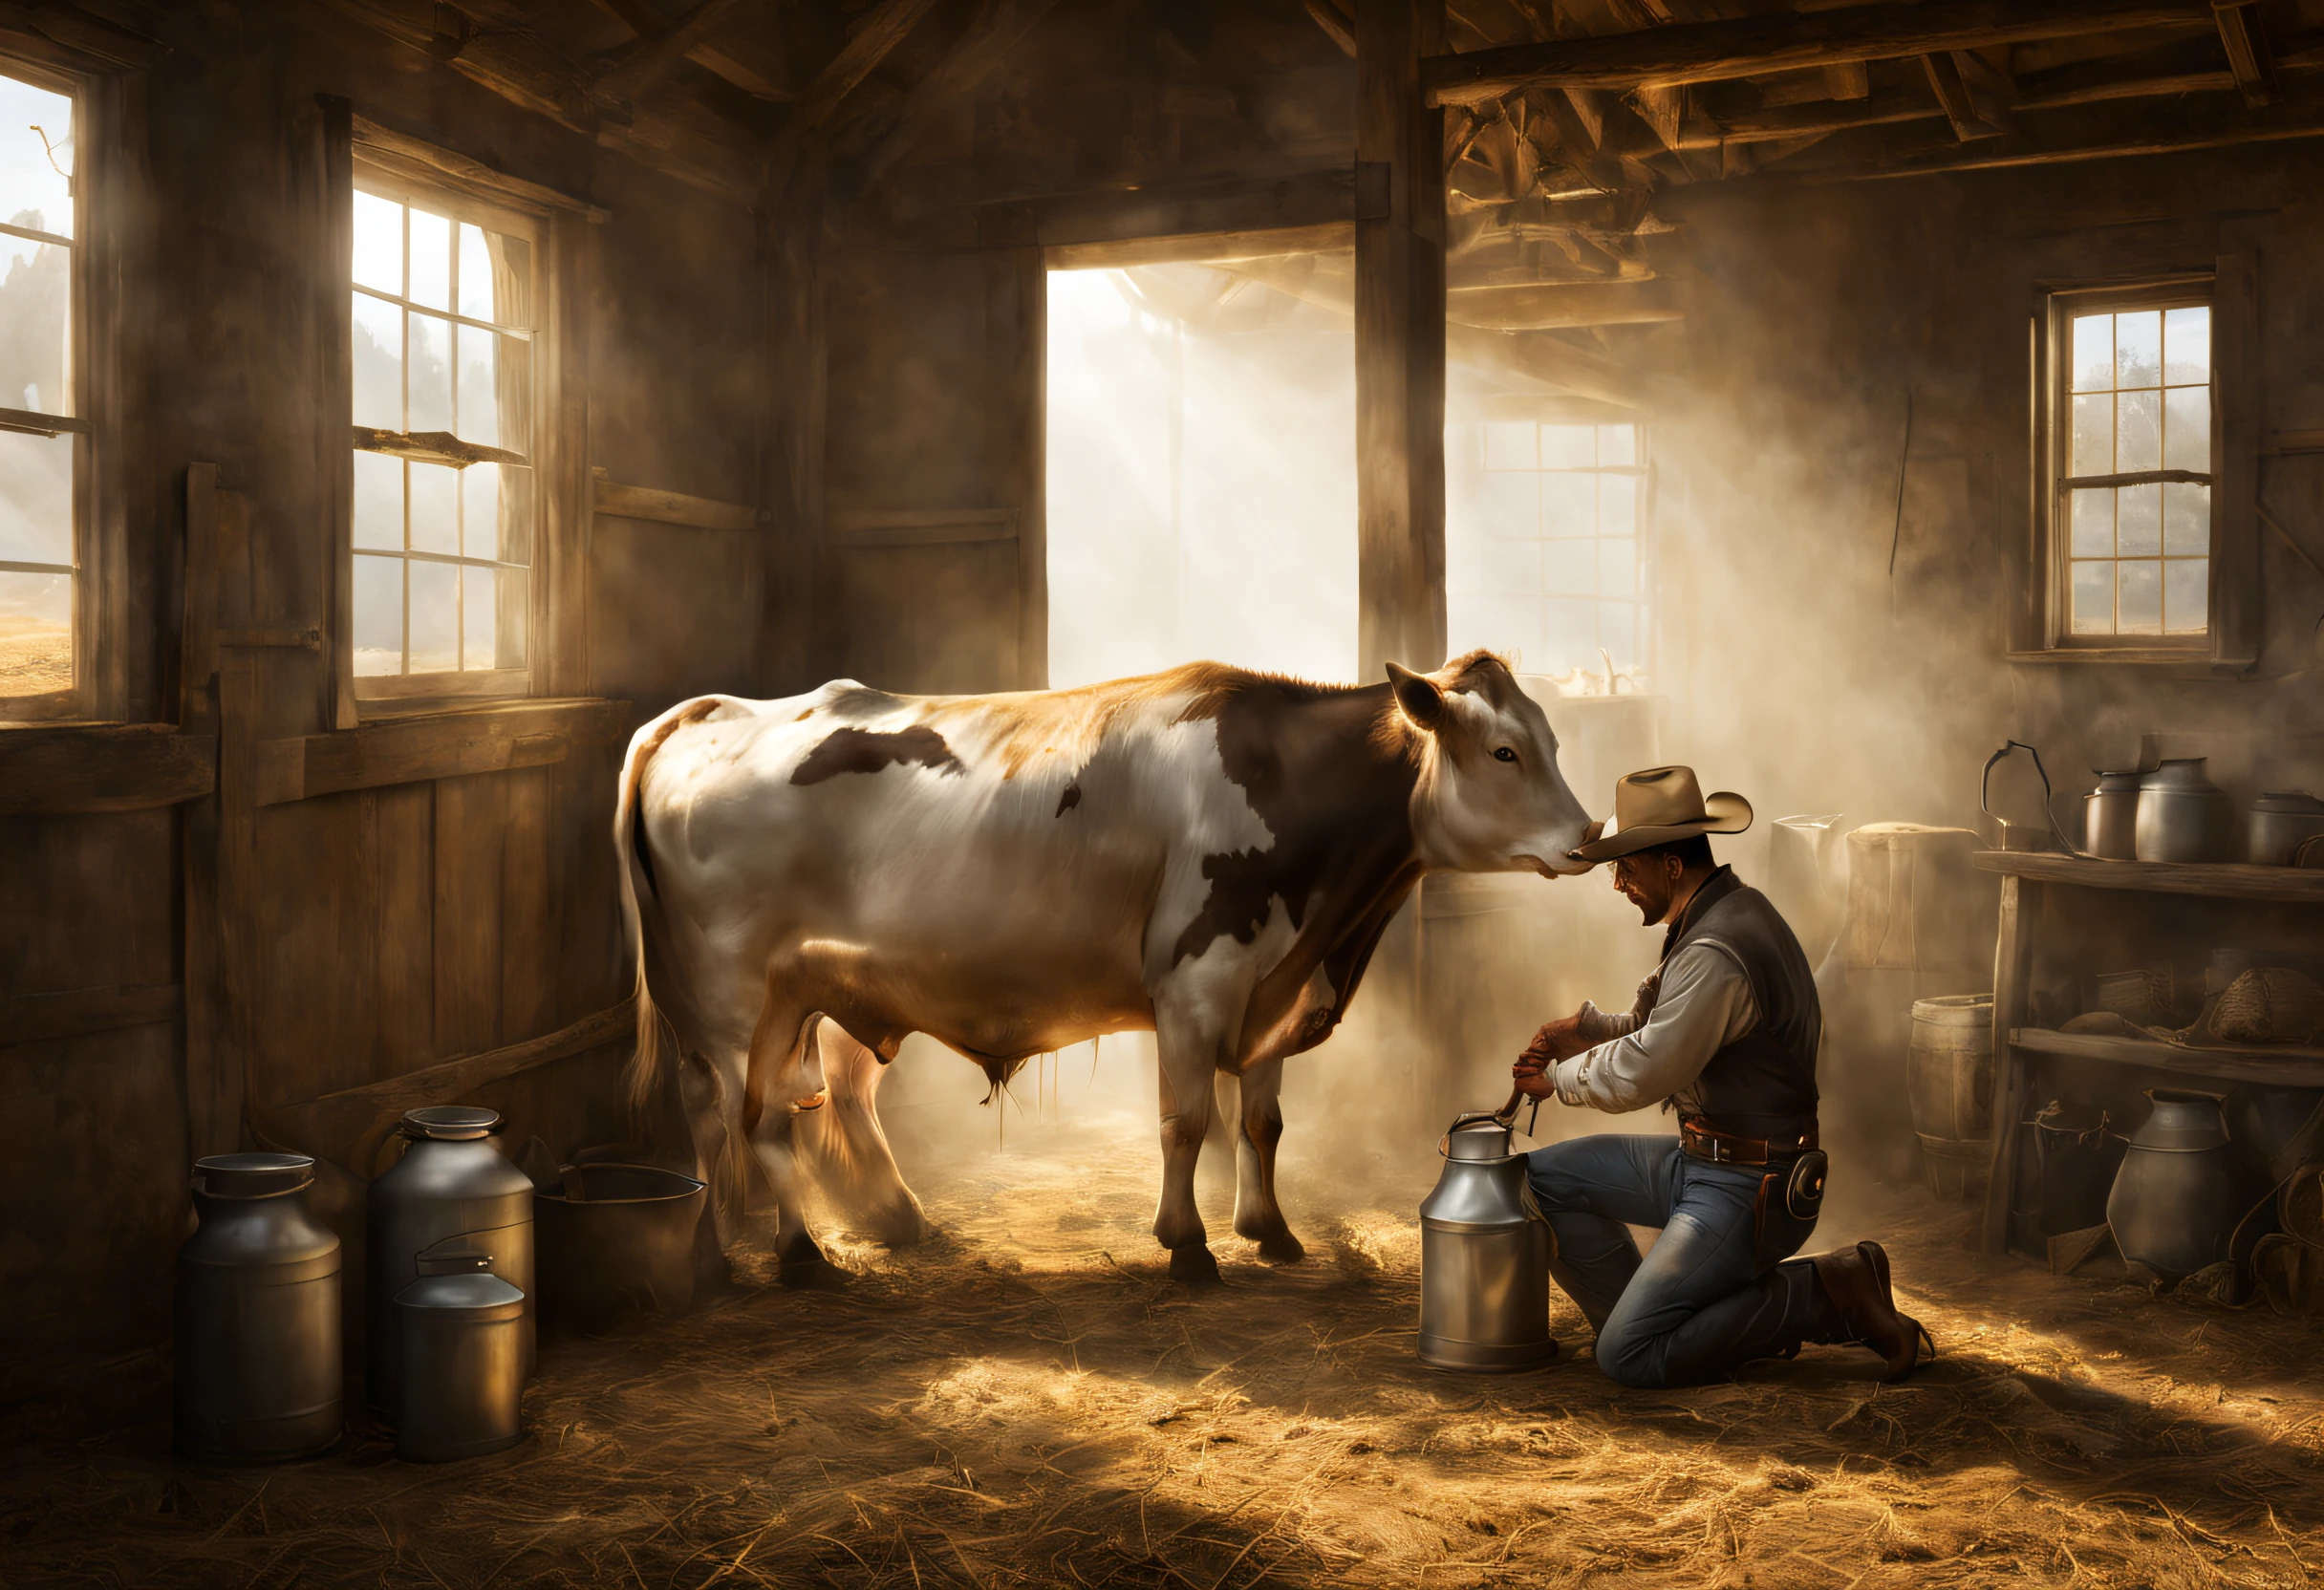 La vie à la ferme, ouest sauvage, Cowboy traire une vache dans une grange, lumière qui brille à travers une petite fenêtre, voyant de volume:1.3, brouillard, (dessus de la table), (Meilleure qualité), (ultra détaillé)